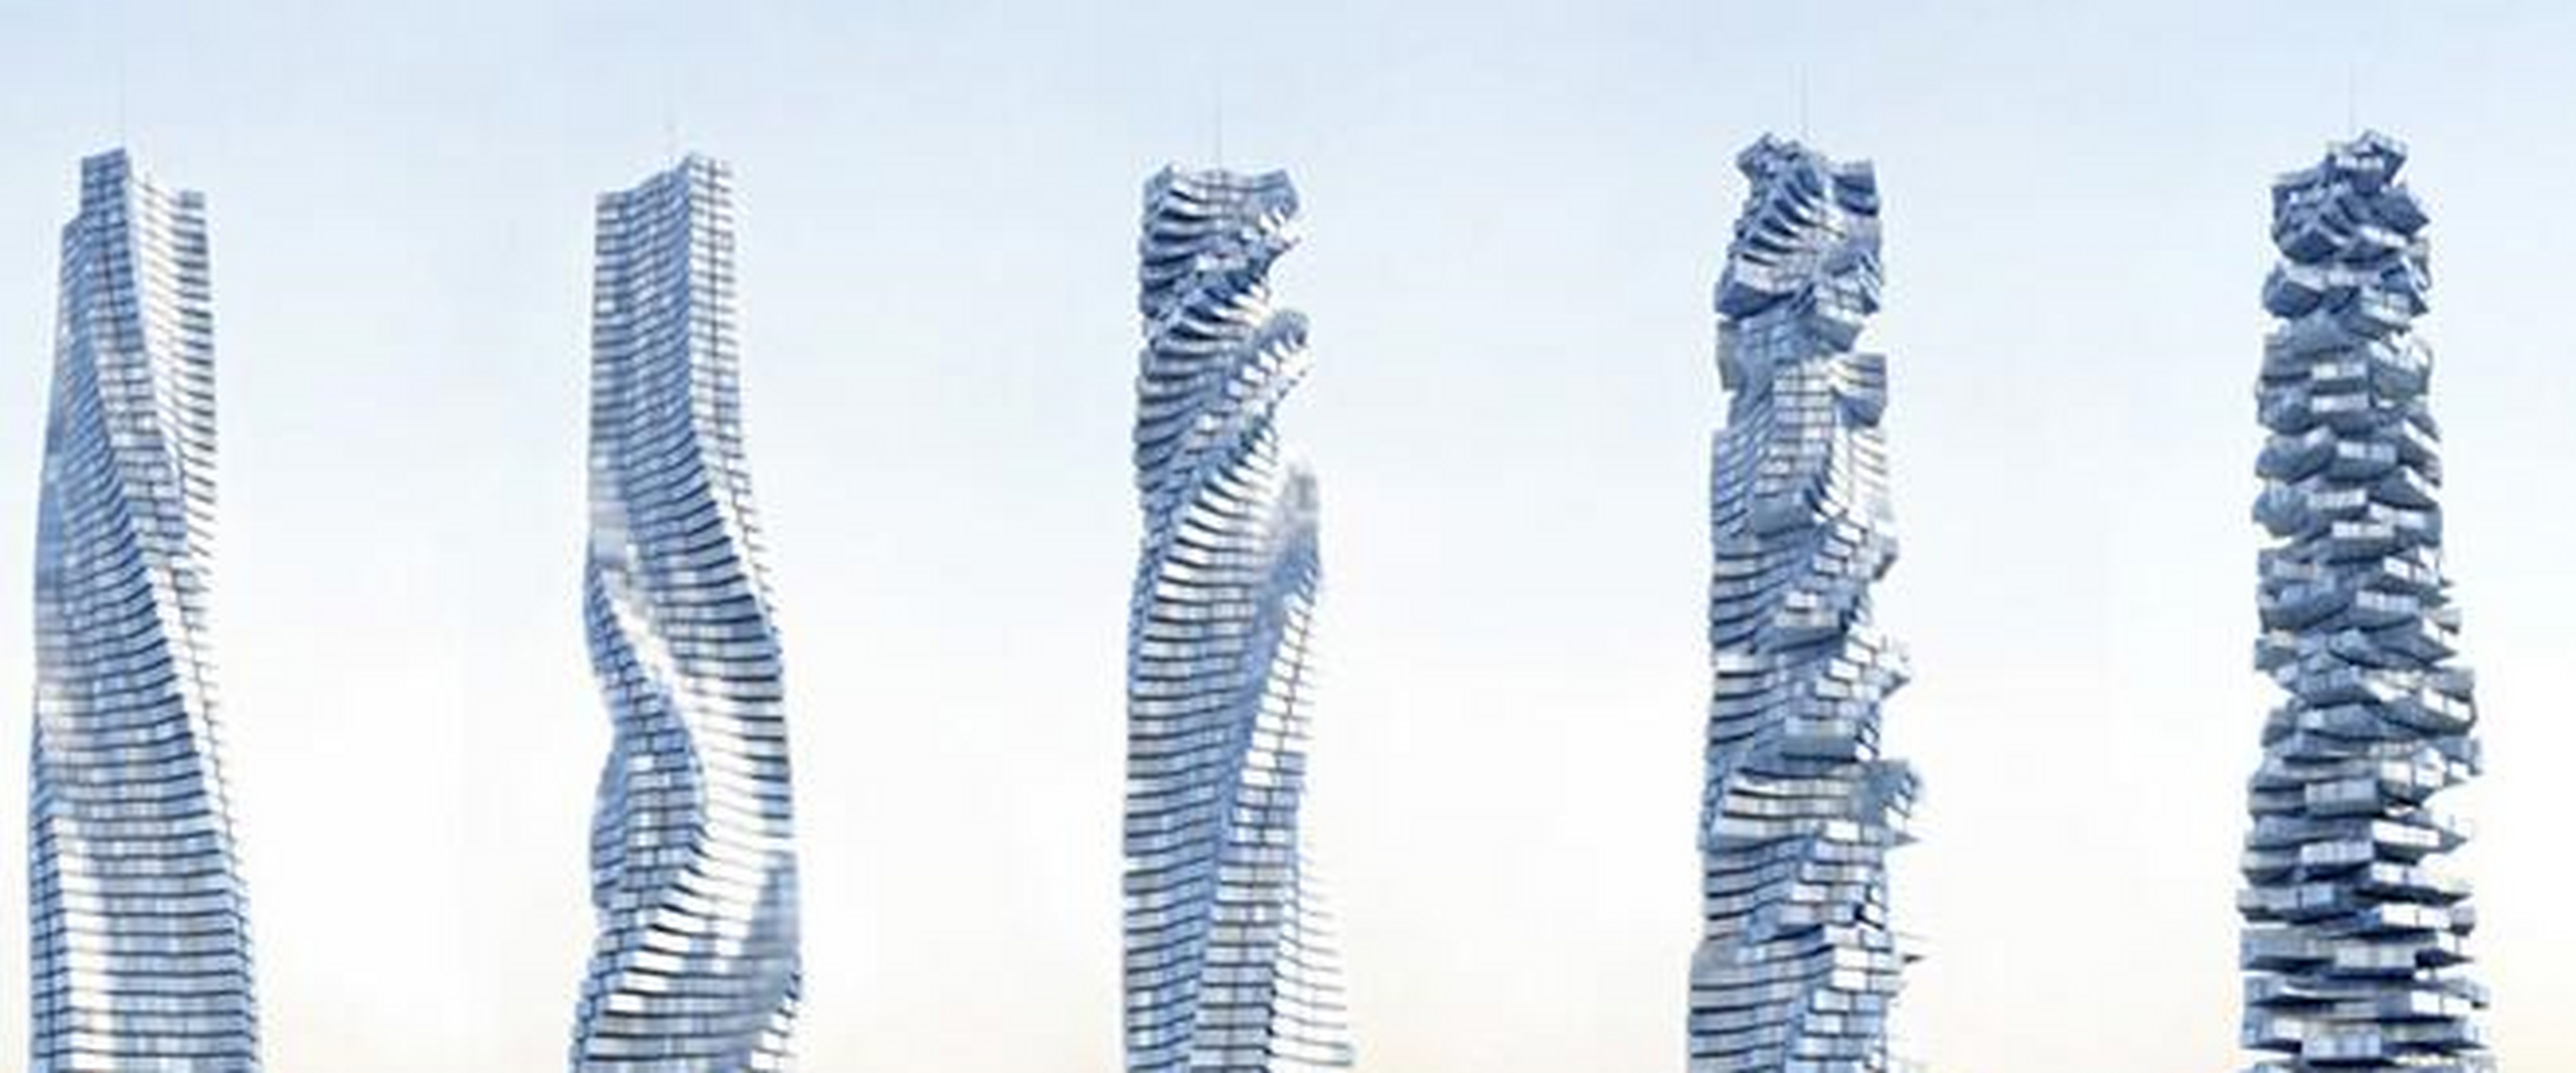 达芬奇塔坐落在迪拜 达芬奇塔坐落在迪拜,是迪拜众高楼之间又一座造型